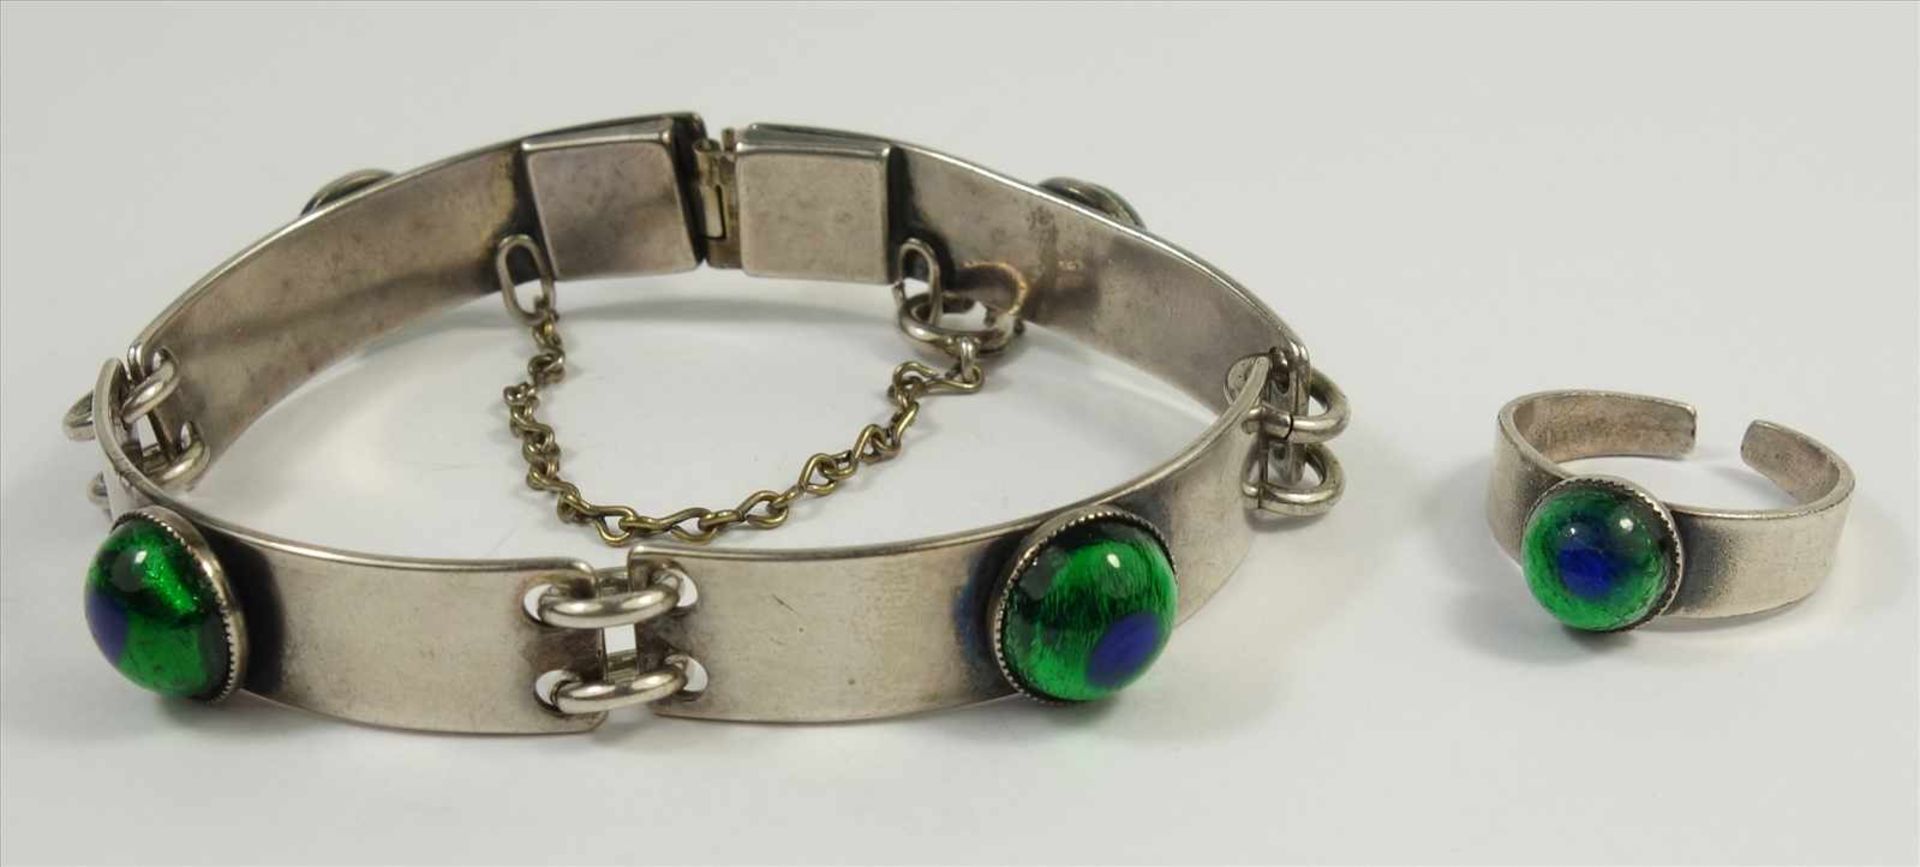 Armband und Ring mit Pfauenauge-Glasschmelz?, Jugendstil um 1910, versilbert, Armband aus 4